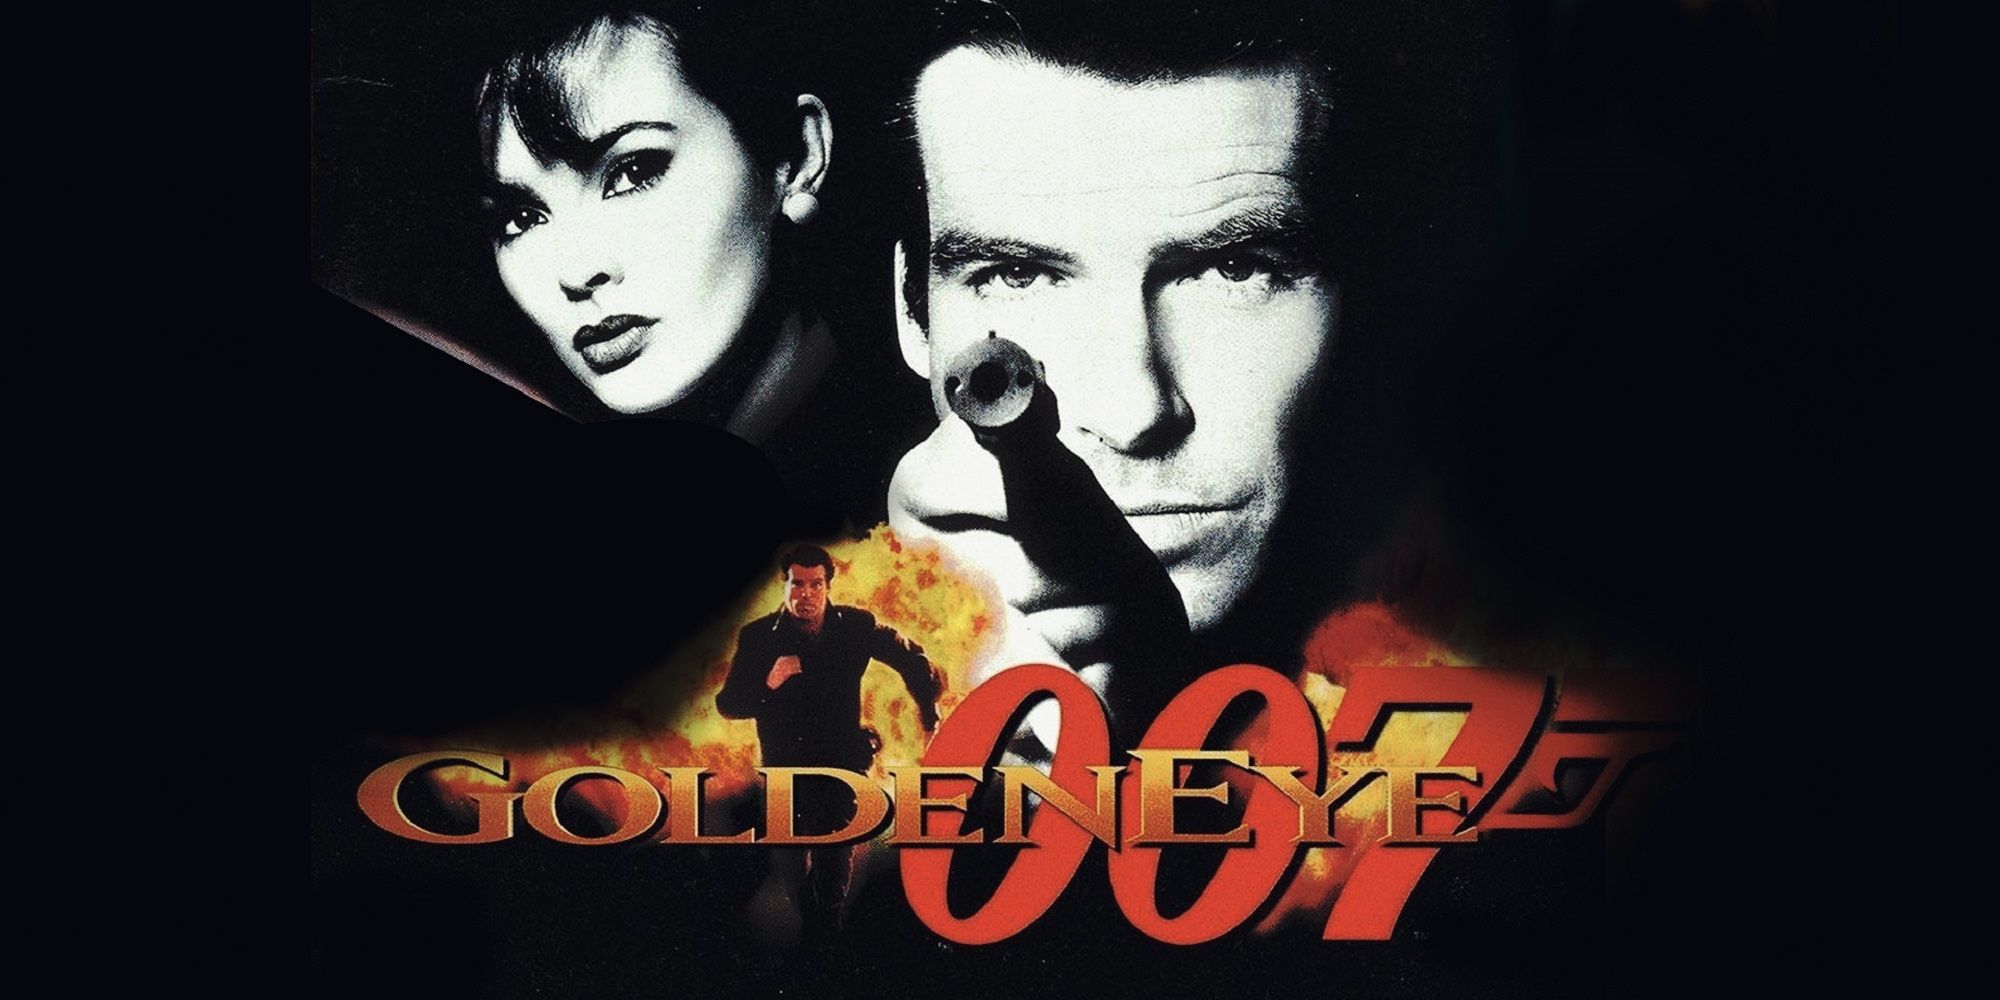 Golden title 007